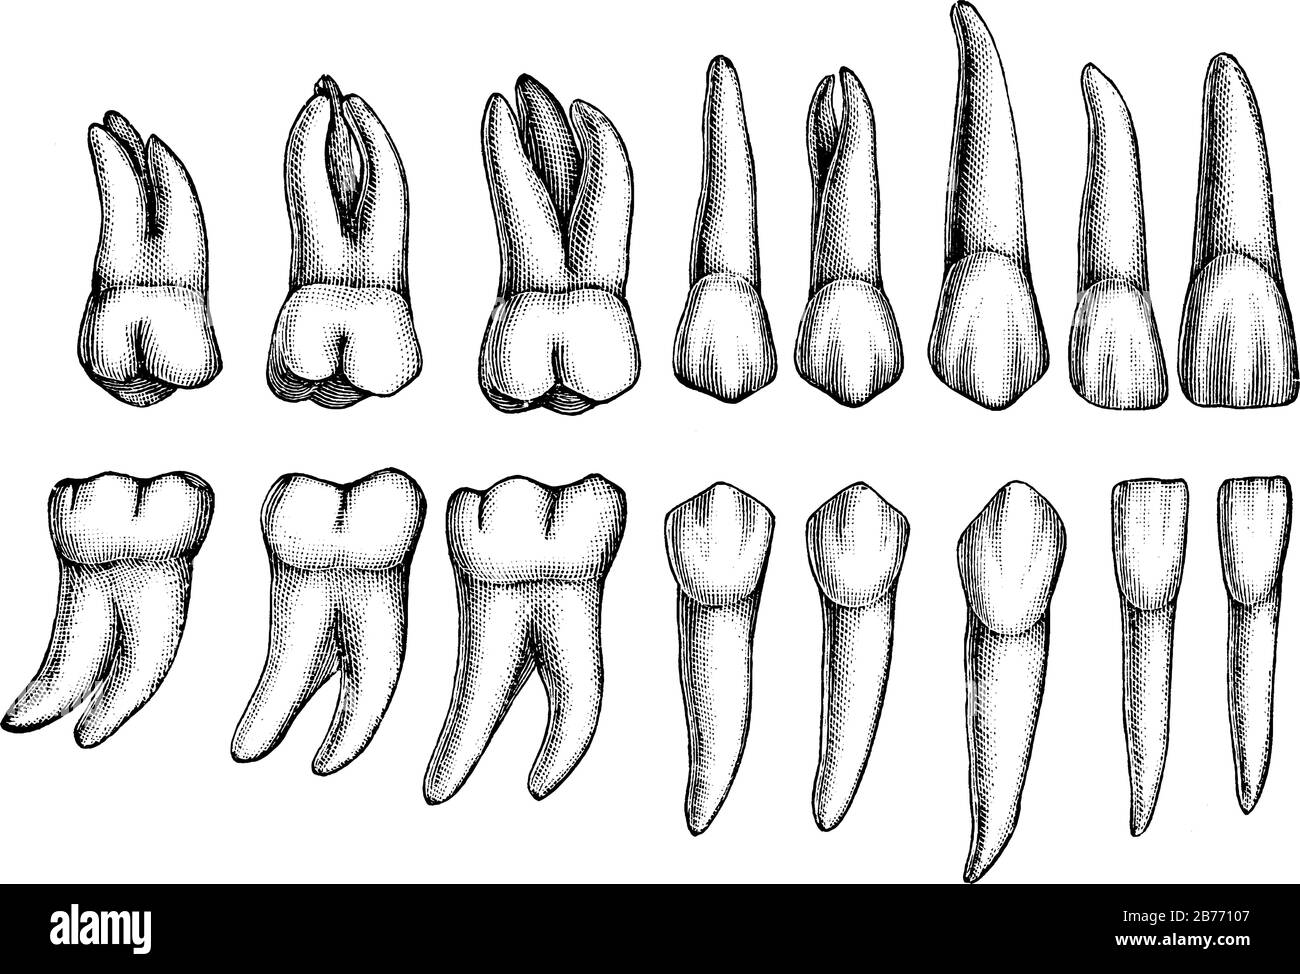 Seize dents permanentes de type différent sont illustrées, ces dents remplacent les dents temporaires, le dessin vintage ou l'illustration de gravure. Illustration de Vecteur